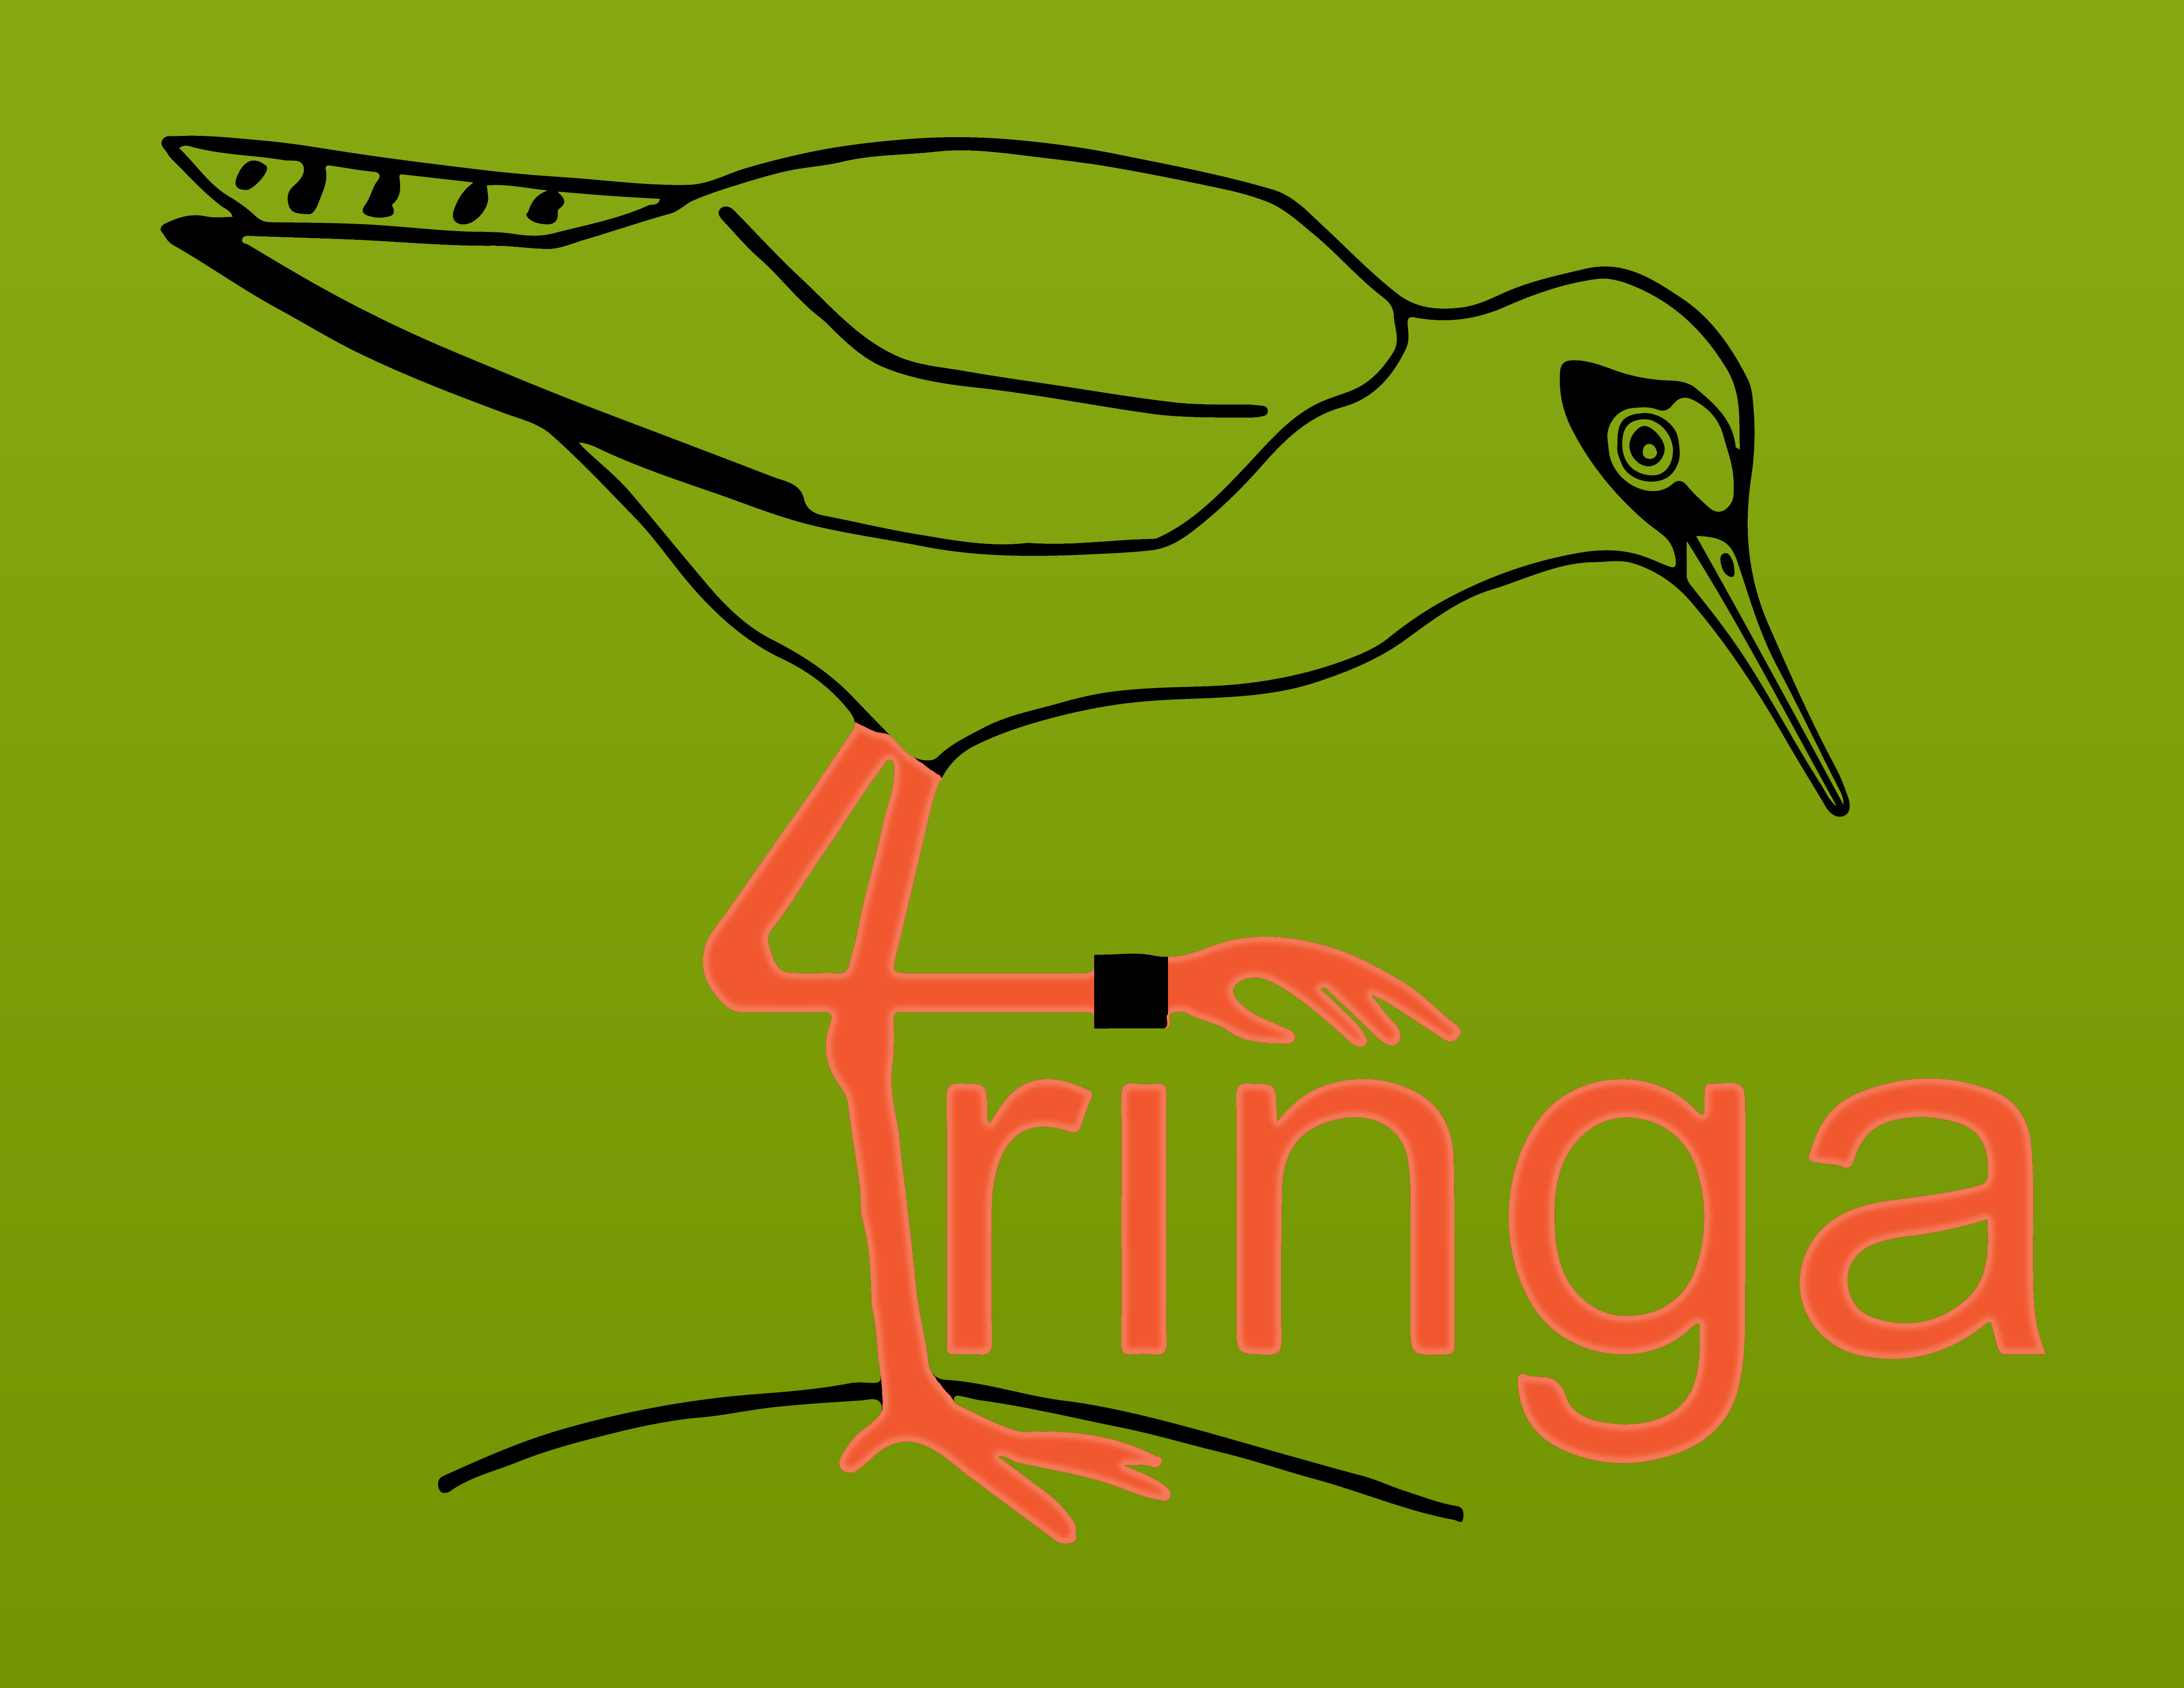 Tringa (T-ring application) Madárgyűrűzési Adatkezelő Rendszer